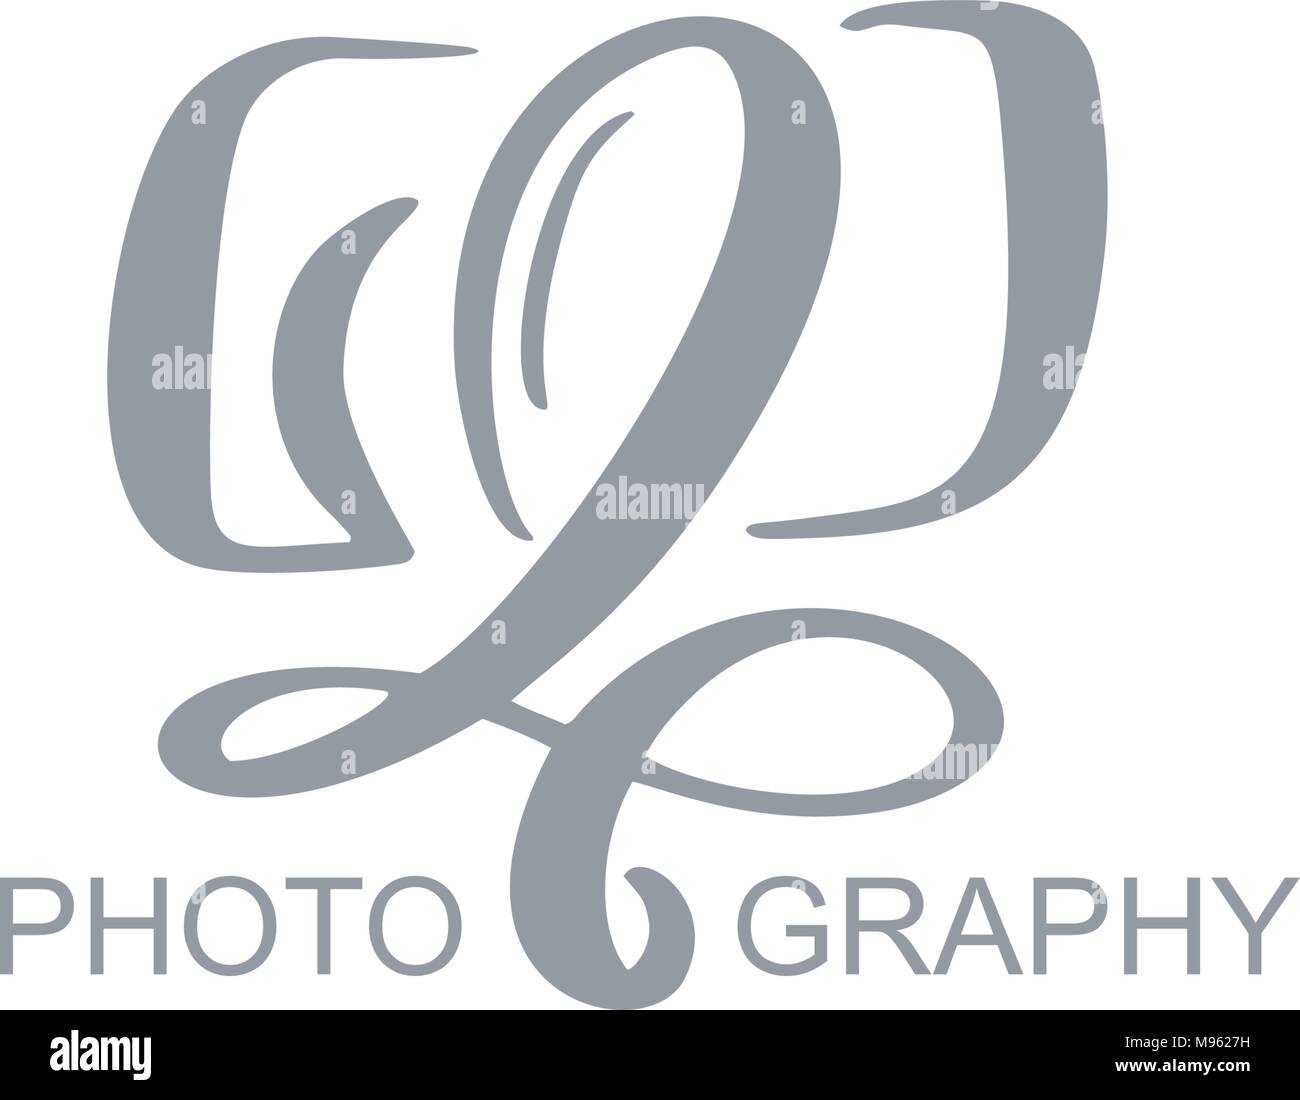 Icono del logotipo de fotografía plantilla vectorial fotografía inscripción caligráfica texto aislado sobre fondo blanco. Ilustración del Vector